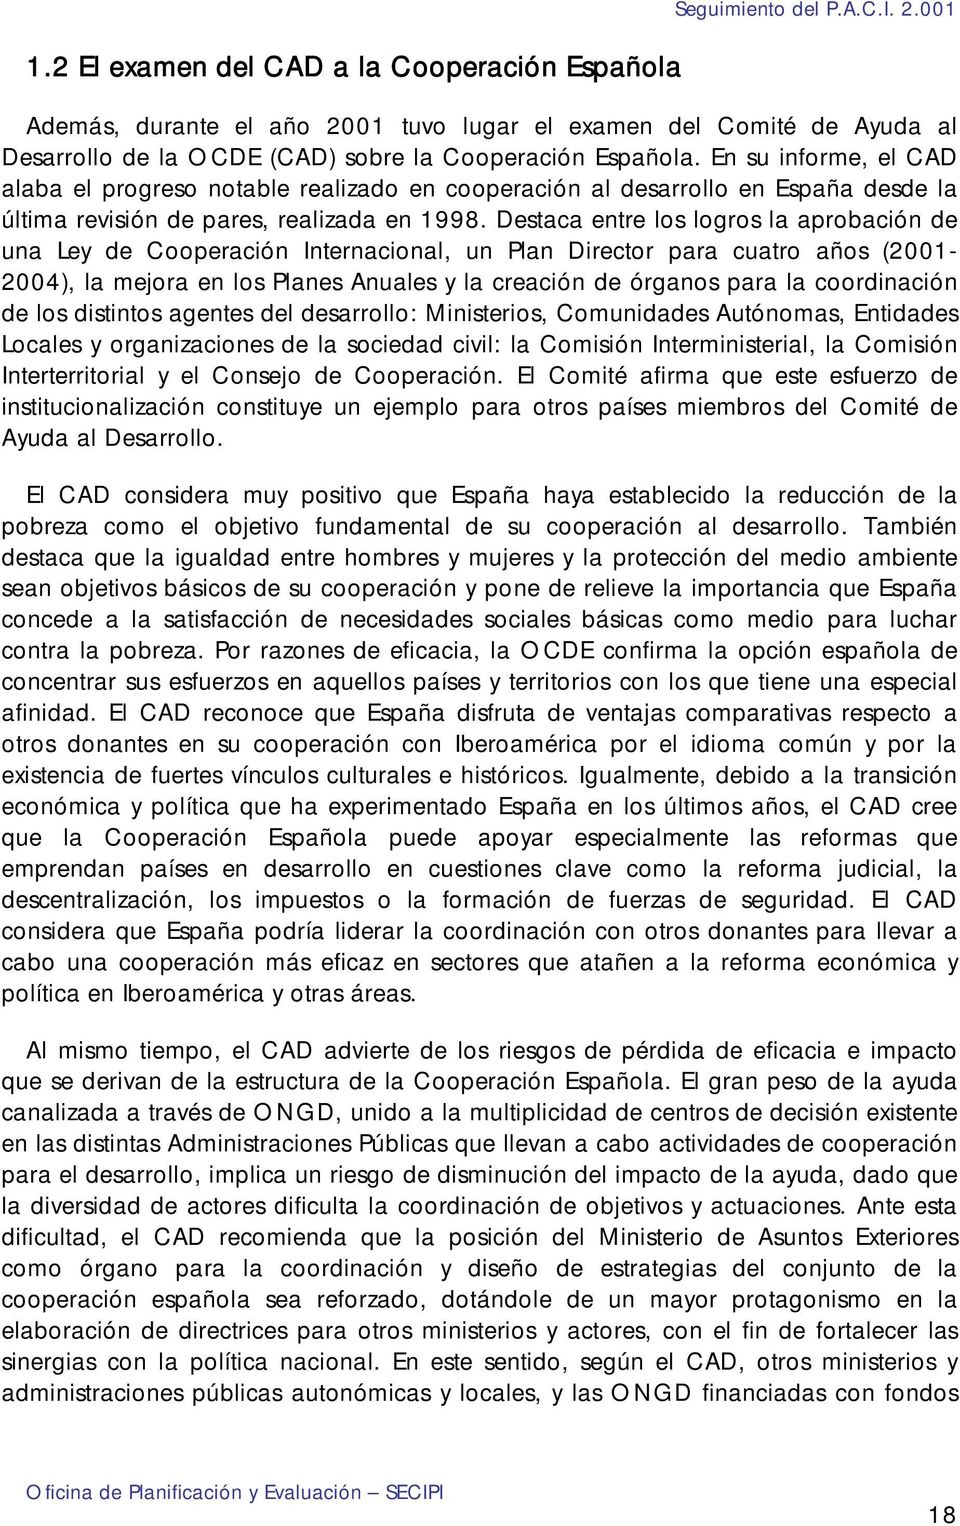 En su informe, el CAD alaba el progreso notable realizado en cooperación al desarrollo en España desde la última revisión de pares, realizada en 1998.